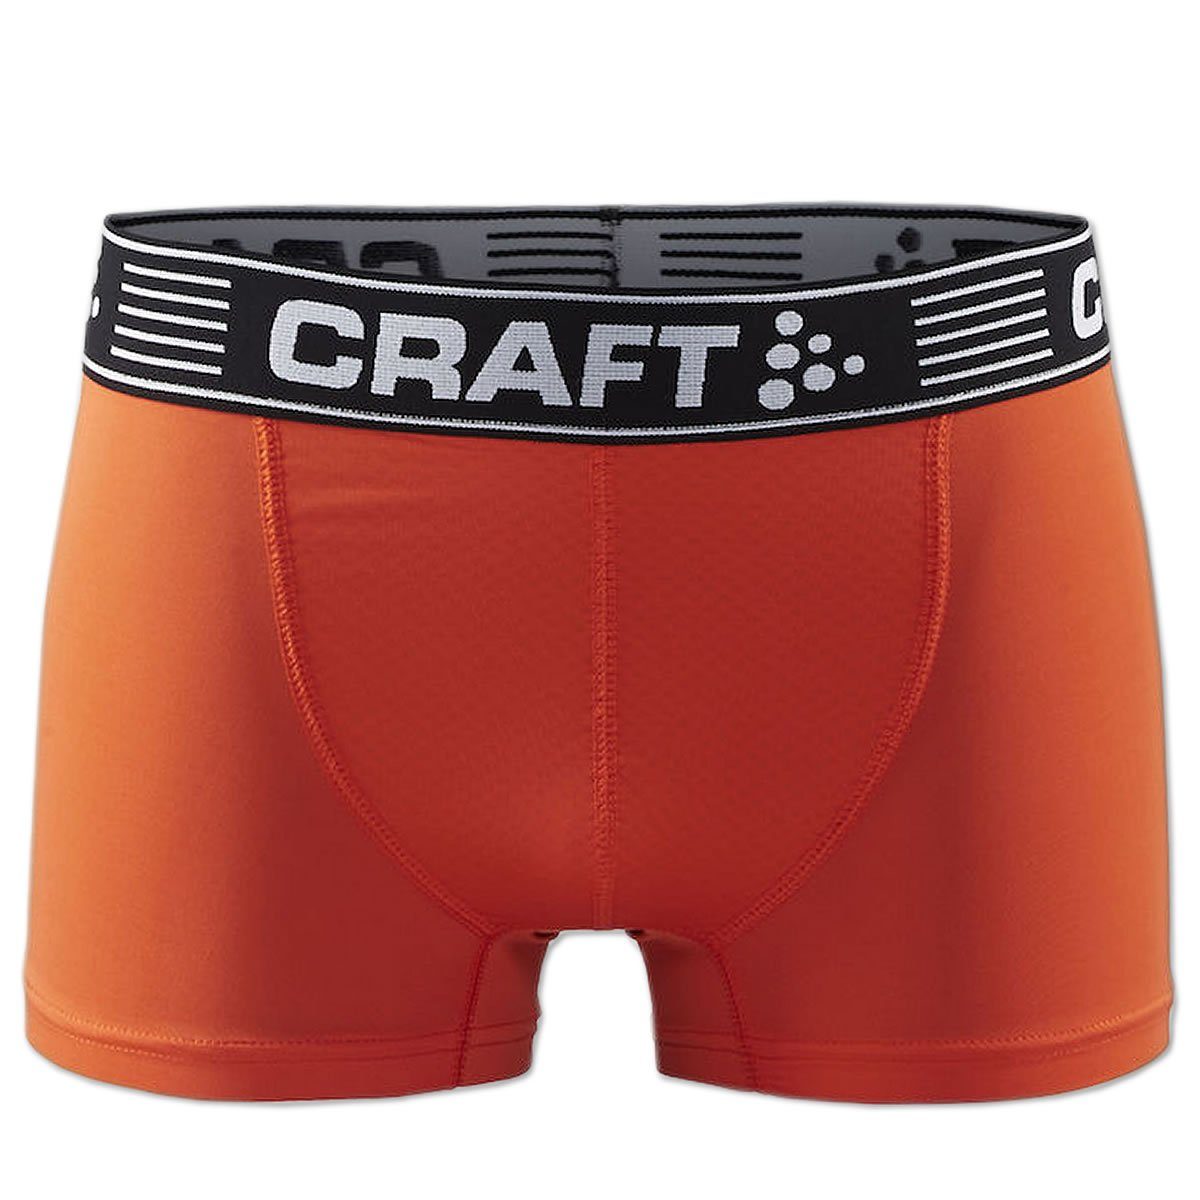 Craft Funktionsunterhose Greatness Boxer Short 3-Inch Sportunterhose Boxershort mit Logo Webbund, weich und bequem orange